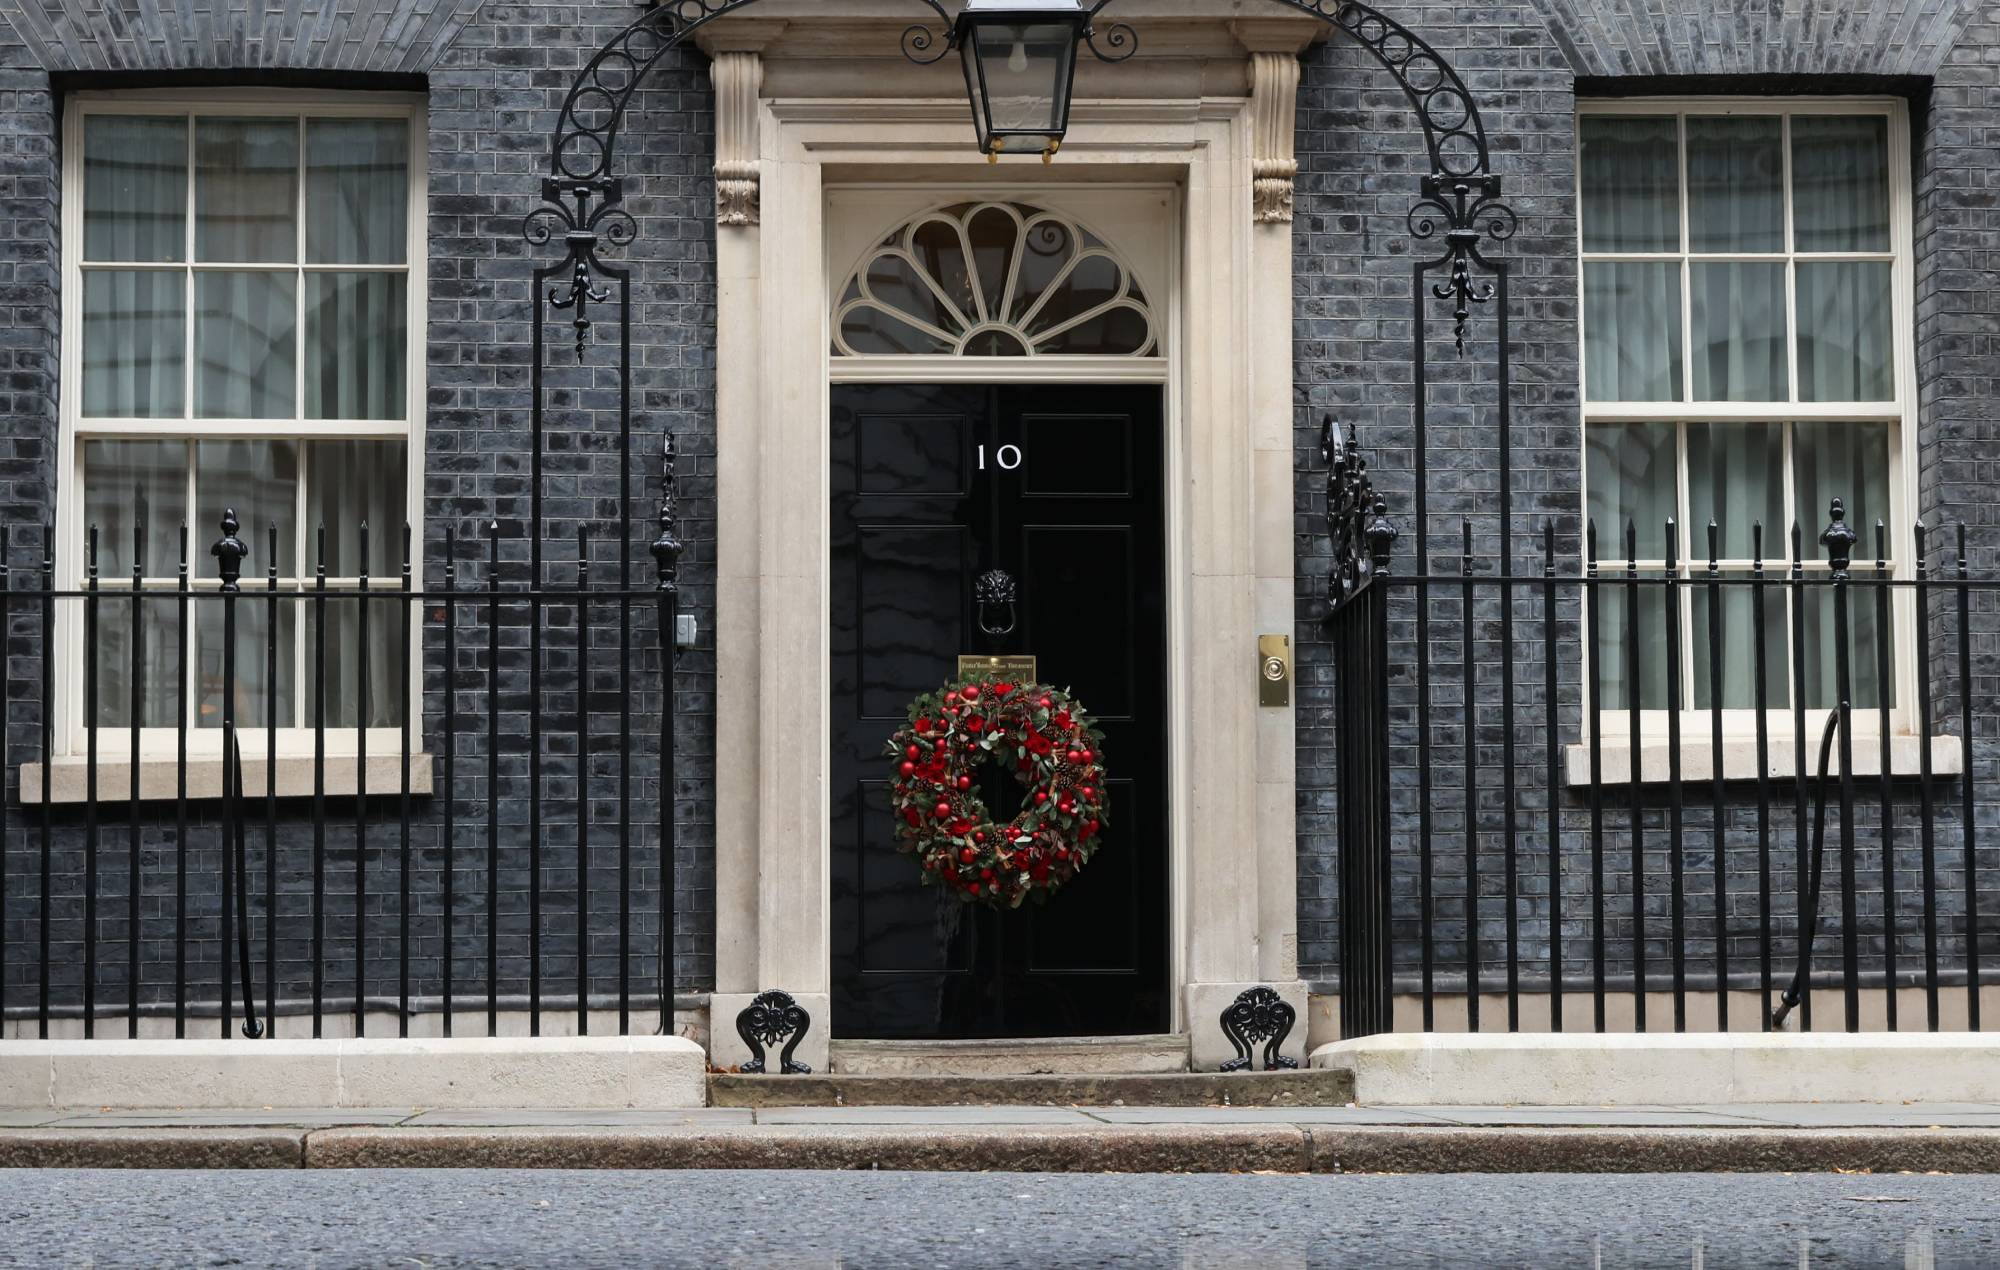 1,2 millones de personas se apuntan a la "Fiesta de Navidad" en el número 10 de Downing Street